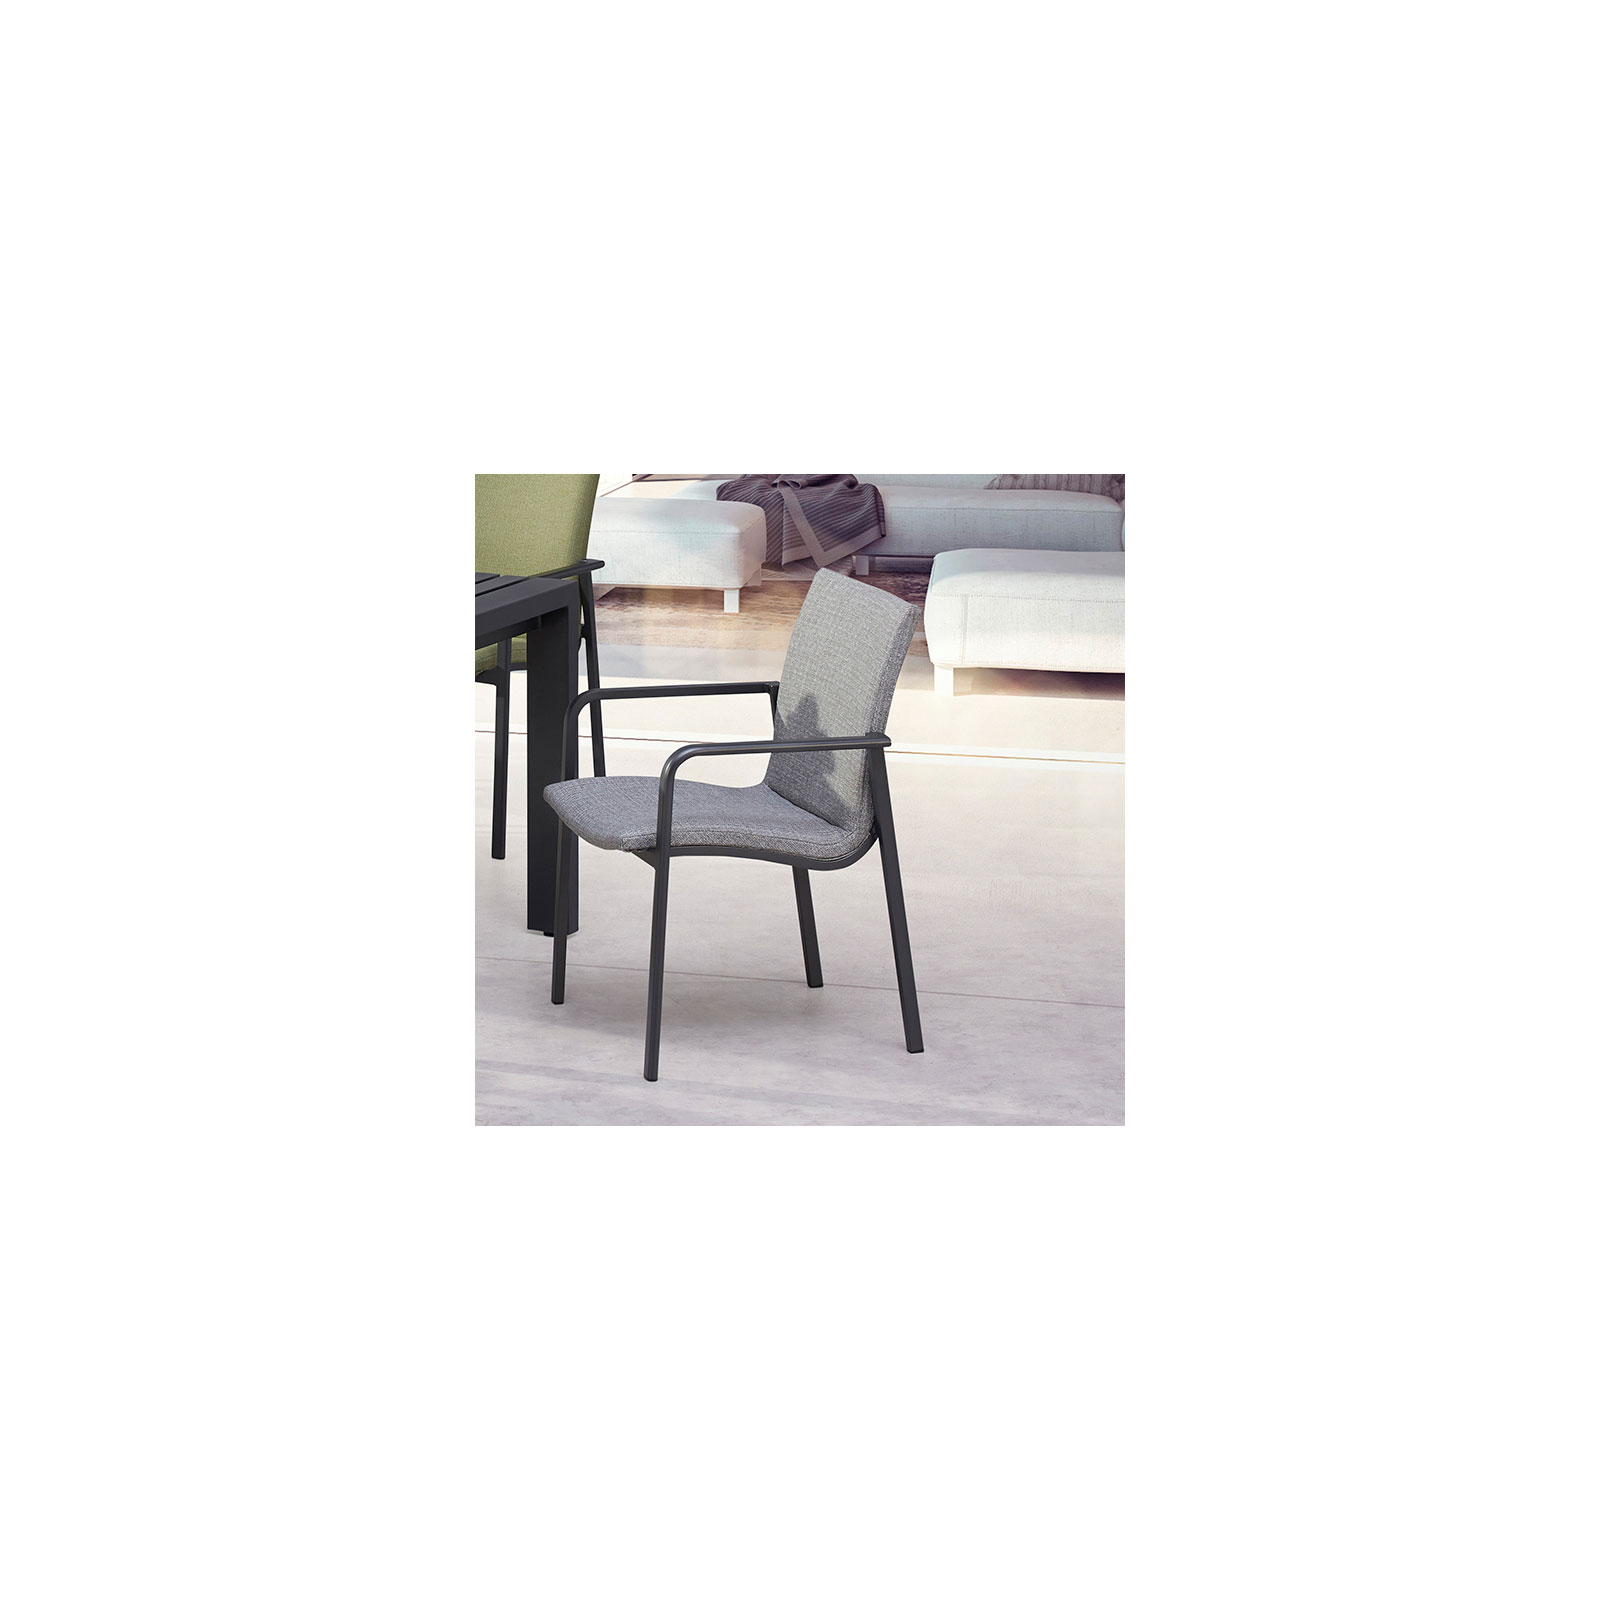 Positano grau | BEST Freizeitmöbel Sessel 507069